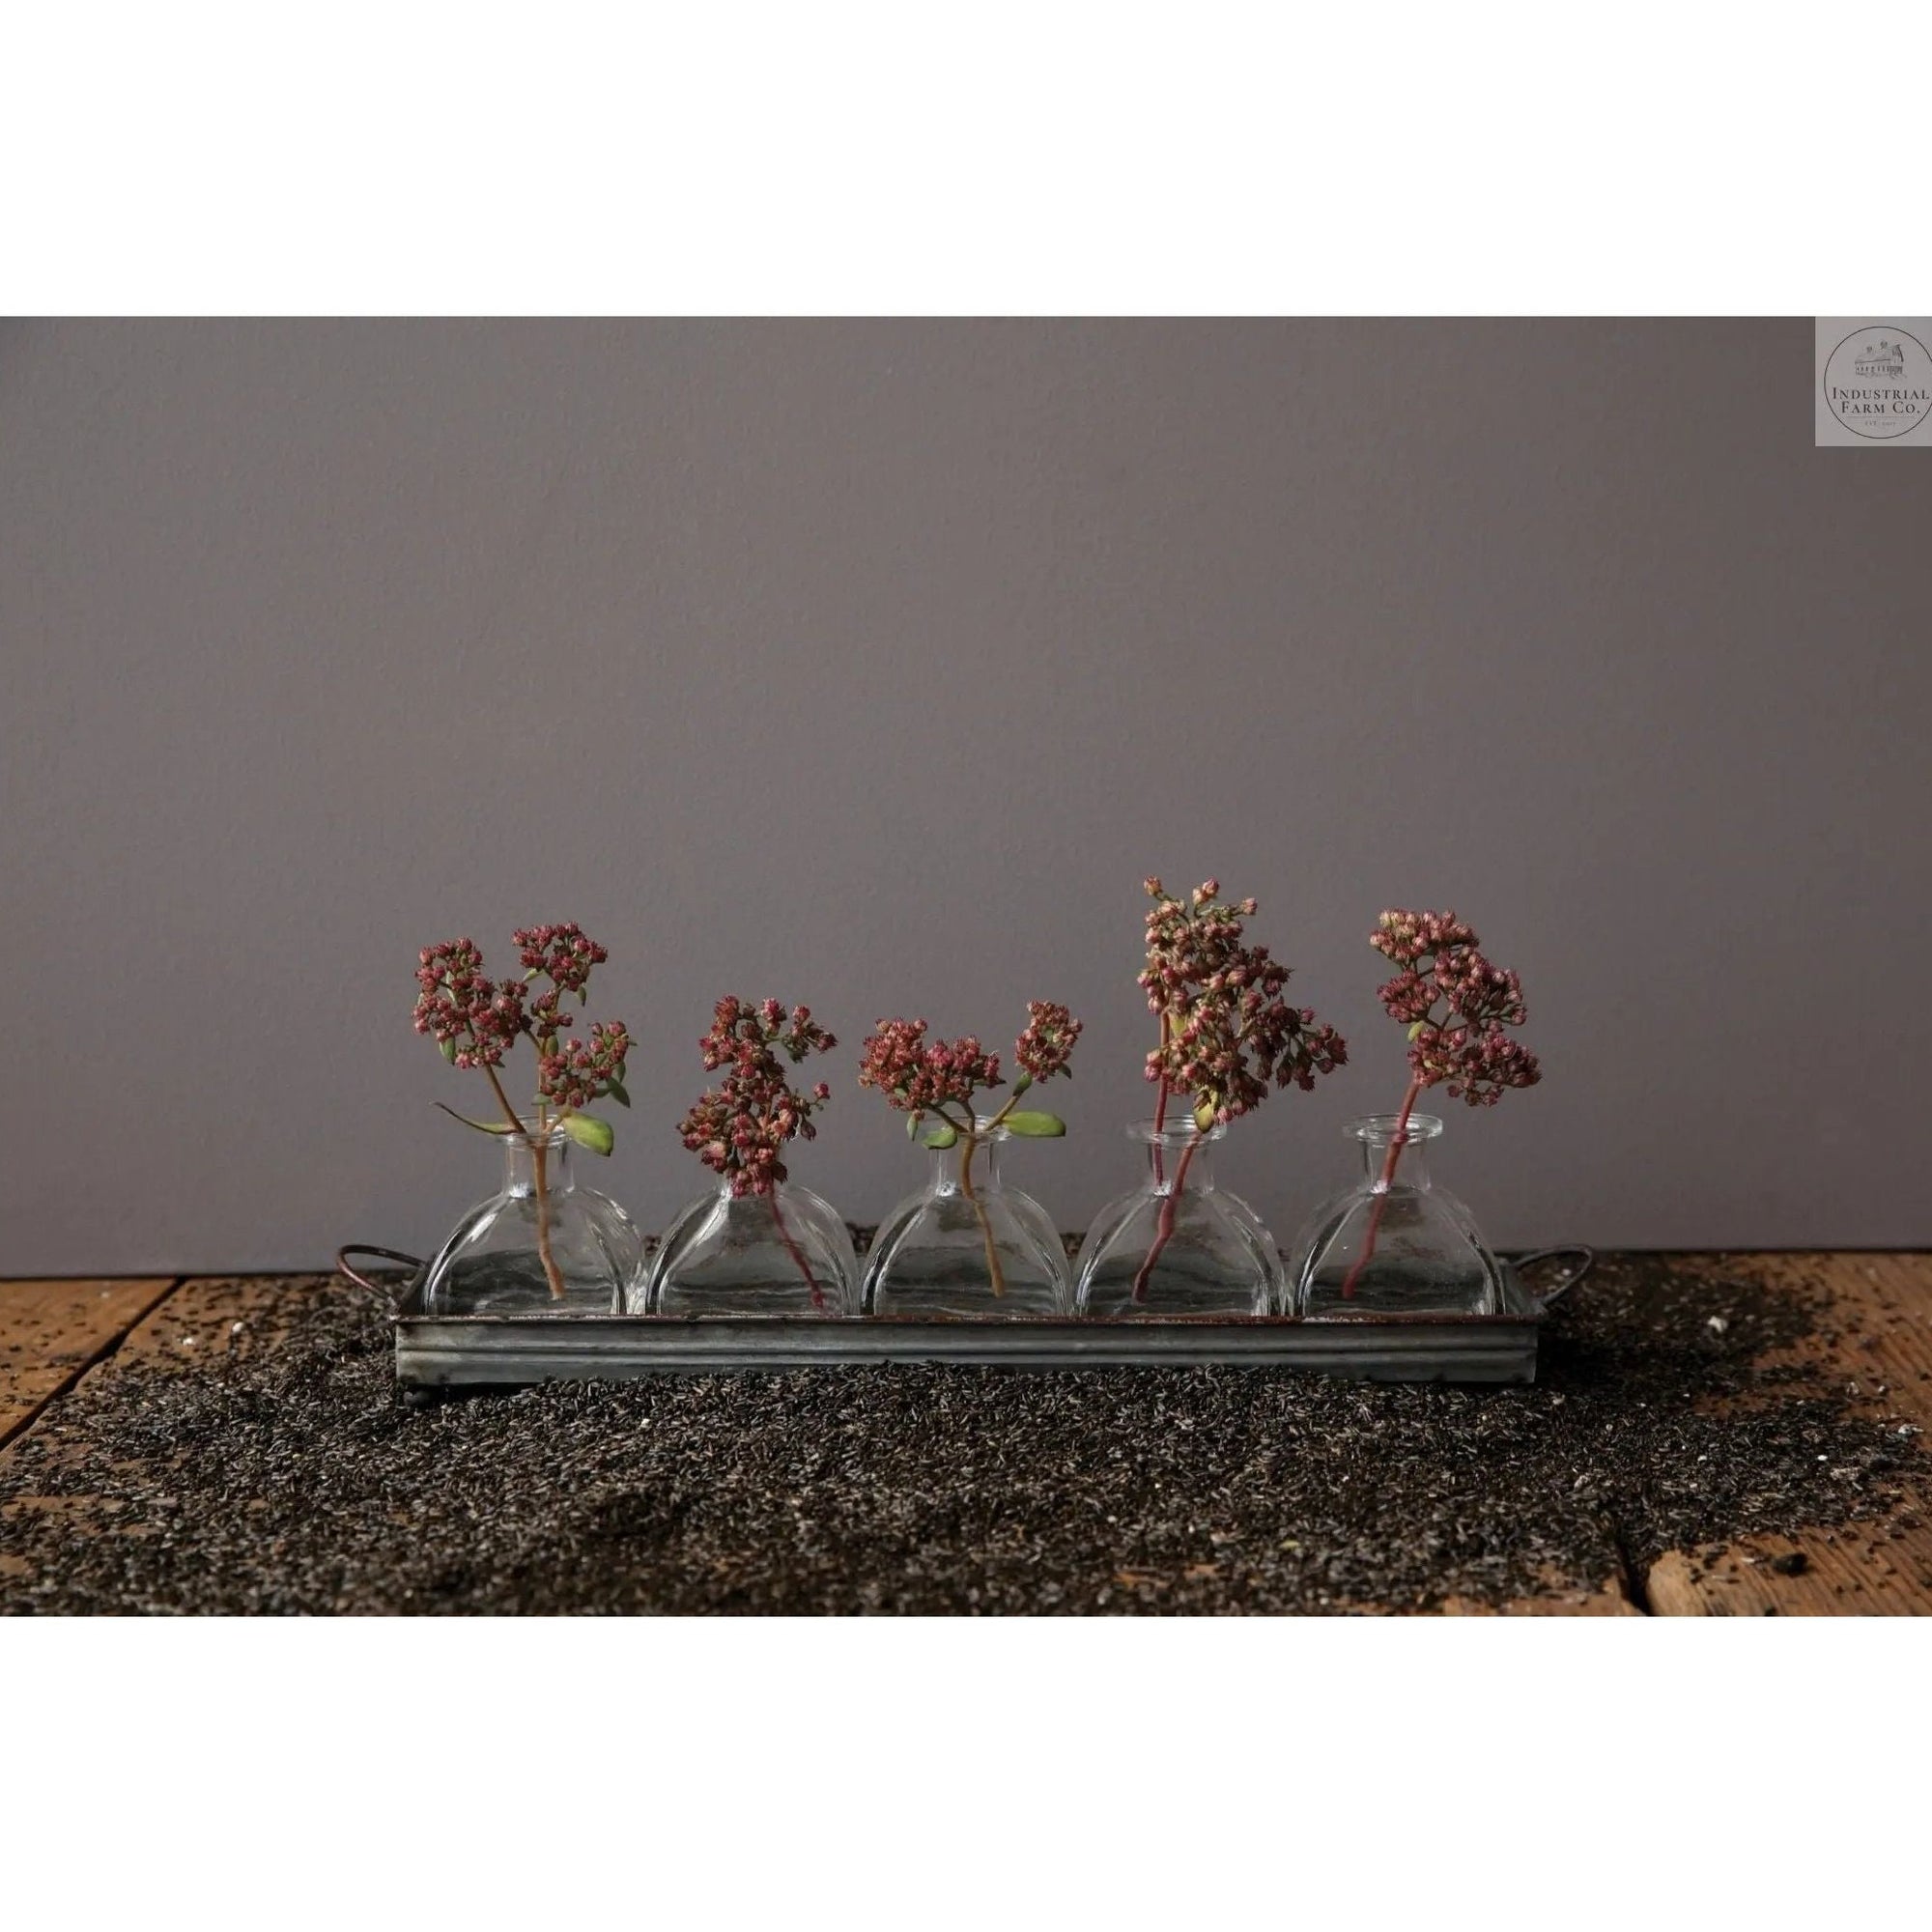 Best Buds Decorative Vase Set  Default Title   | Industrial Farm Co